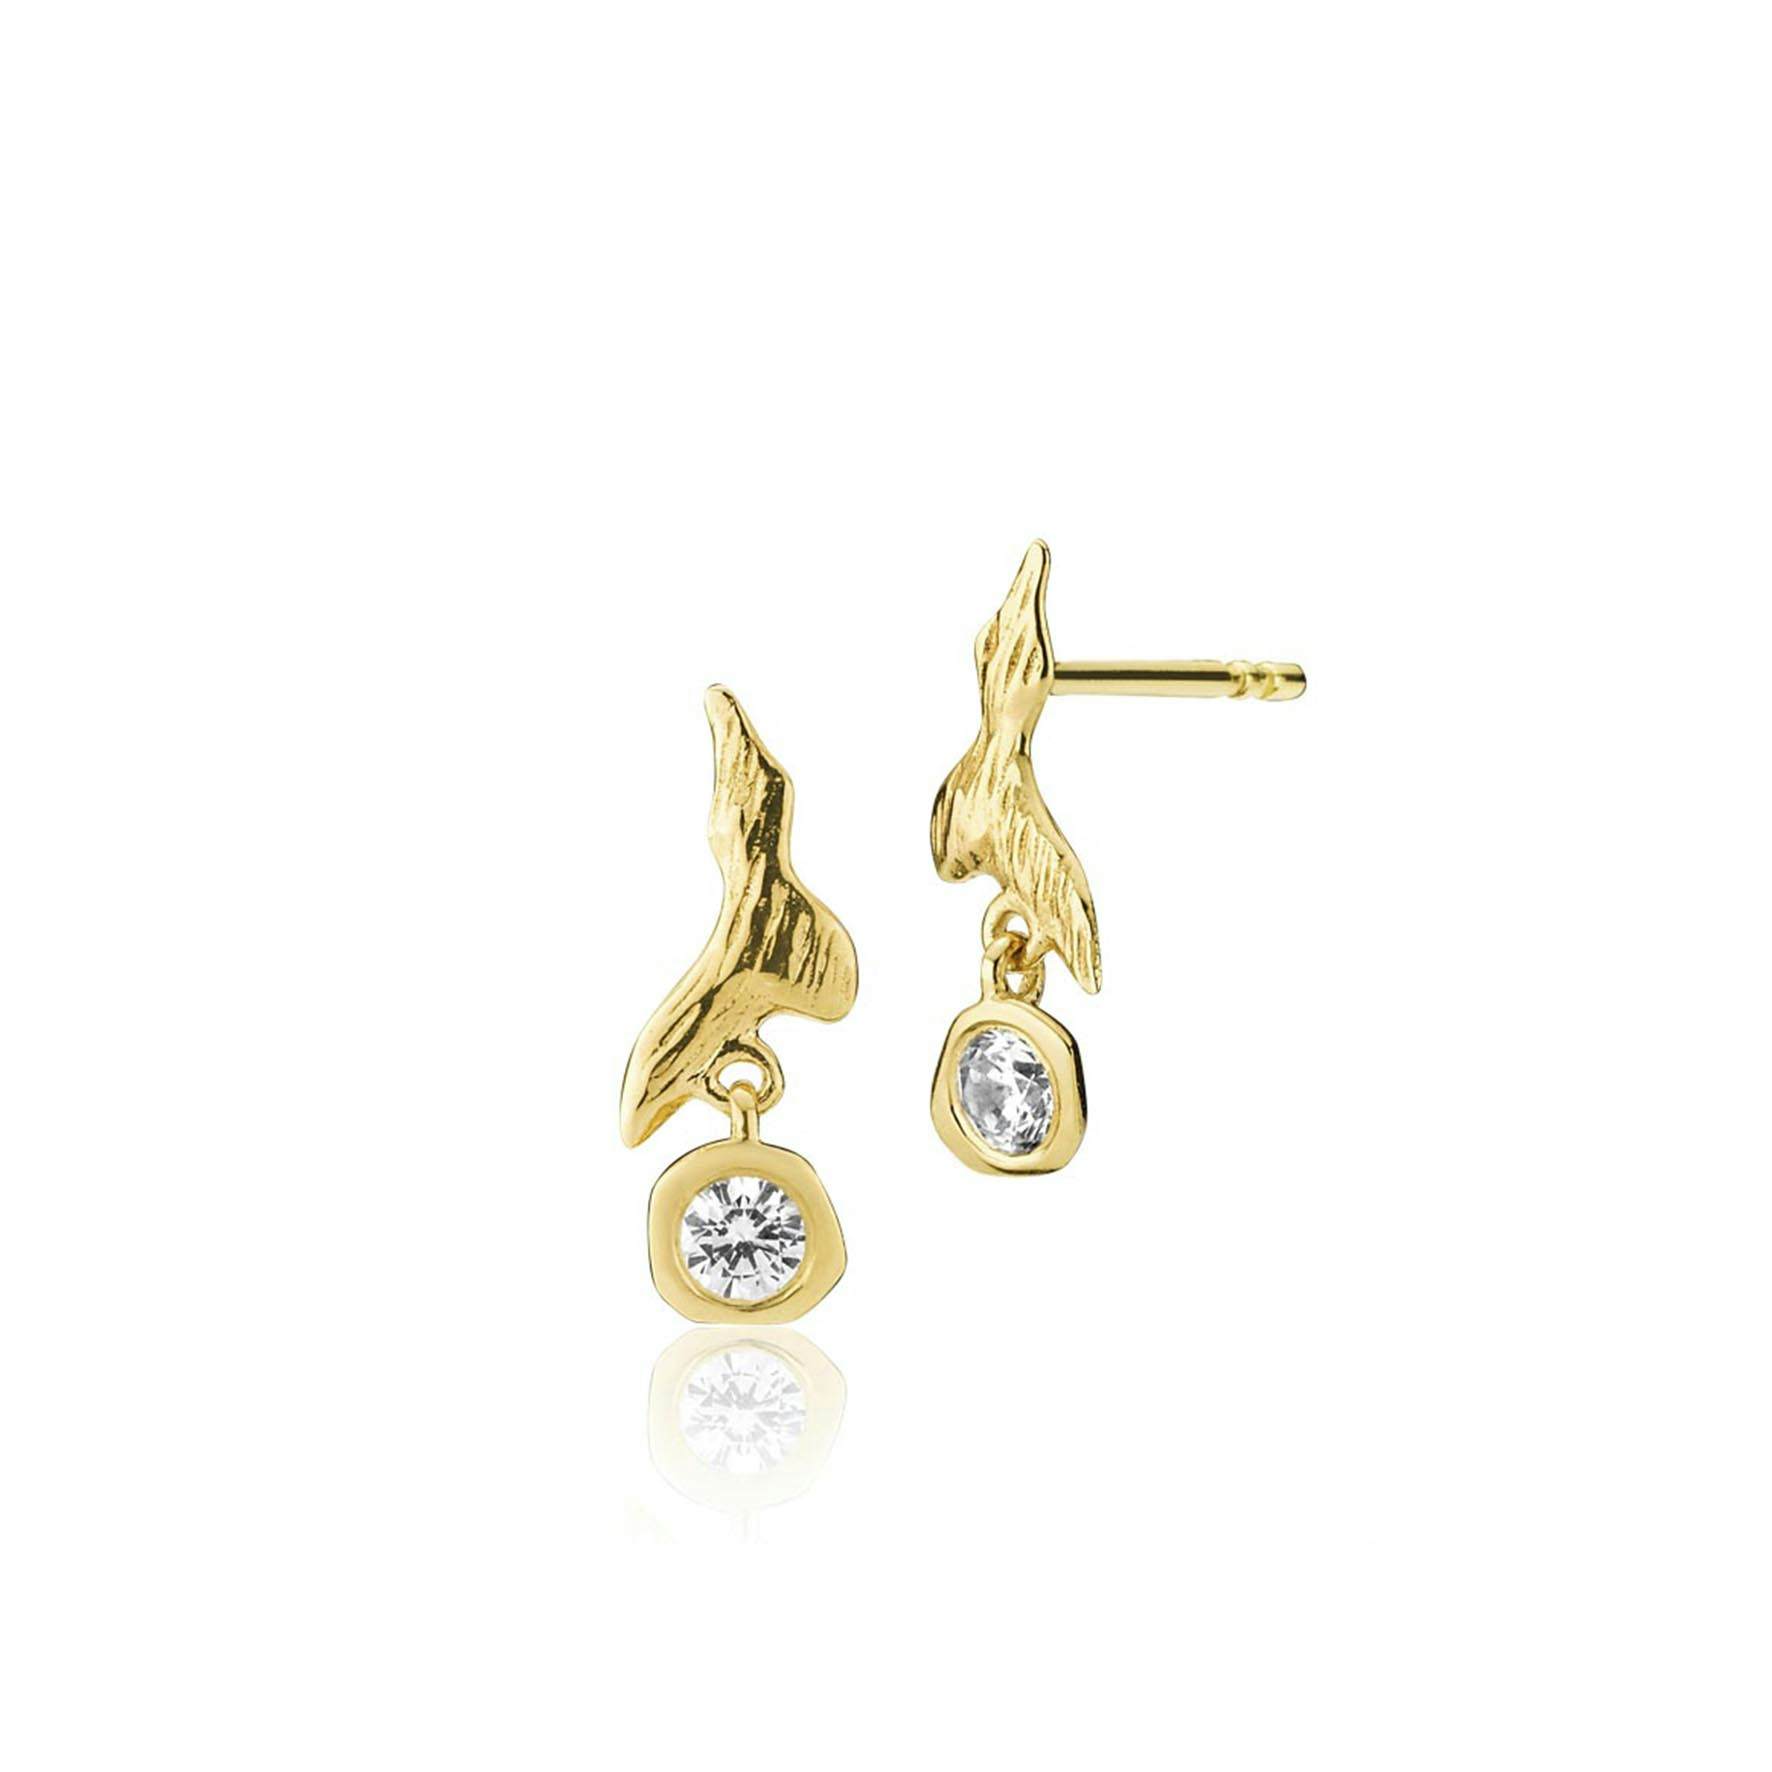 Fairy Earrings With Stone fra Izabel Camille i Forgylt-Sølv Sterling 925